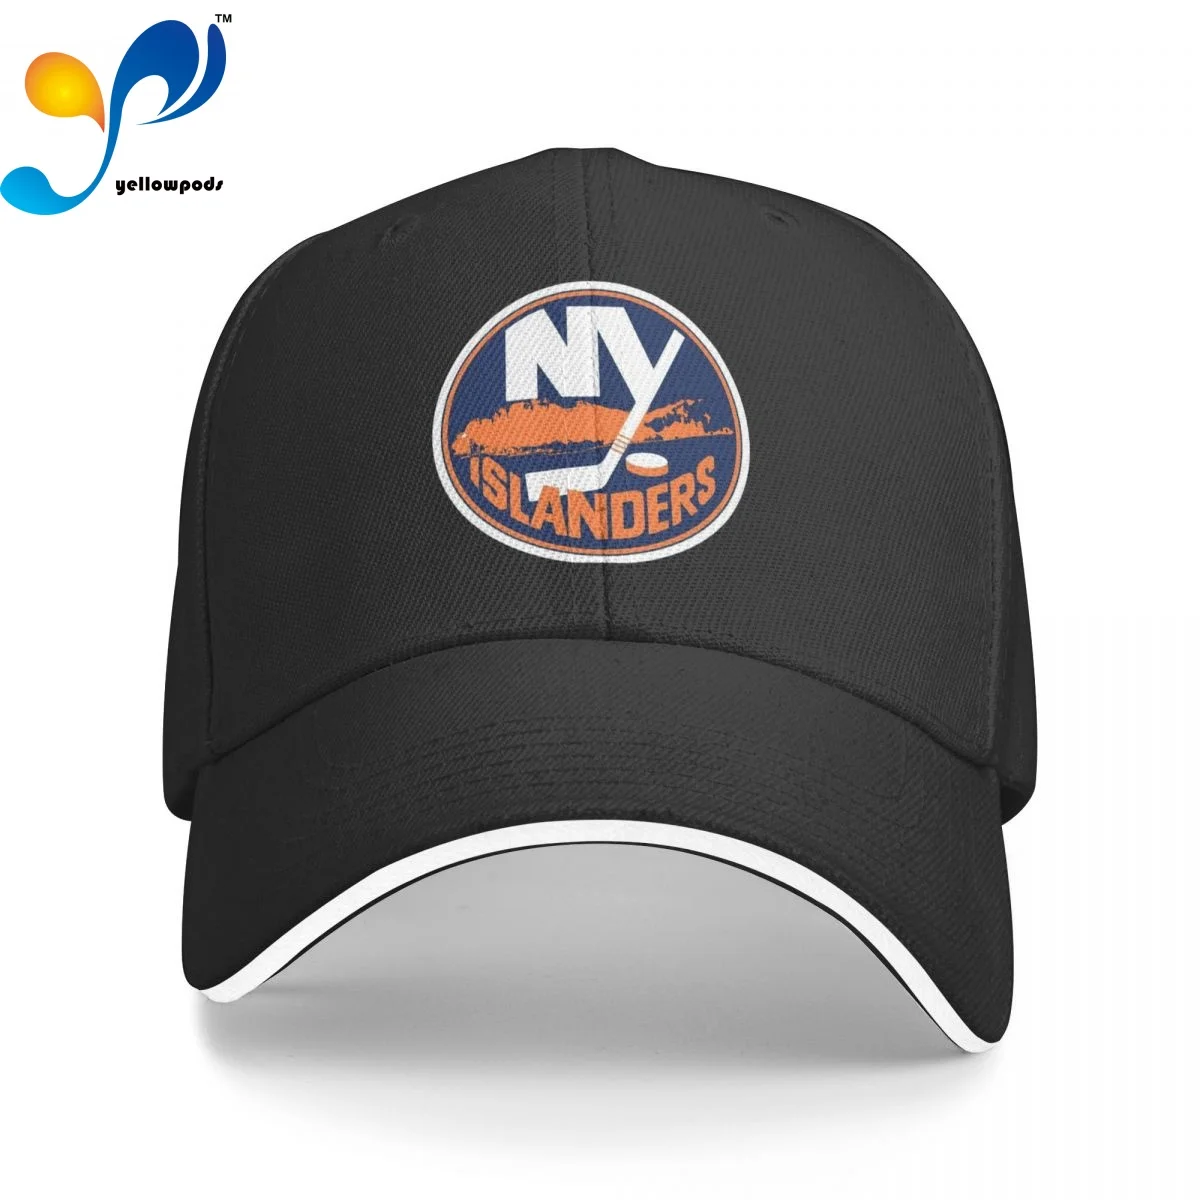 Бейсболка Islanders унисекс, регулируемые бейсболки, кепки Нью-Йорк для мужчин и женщин